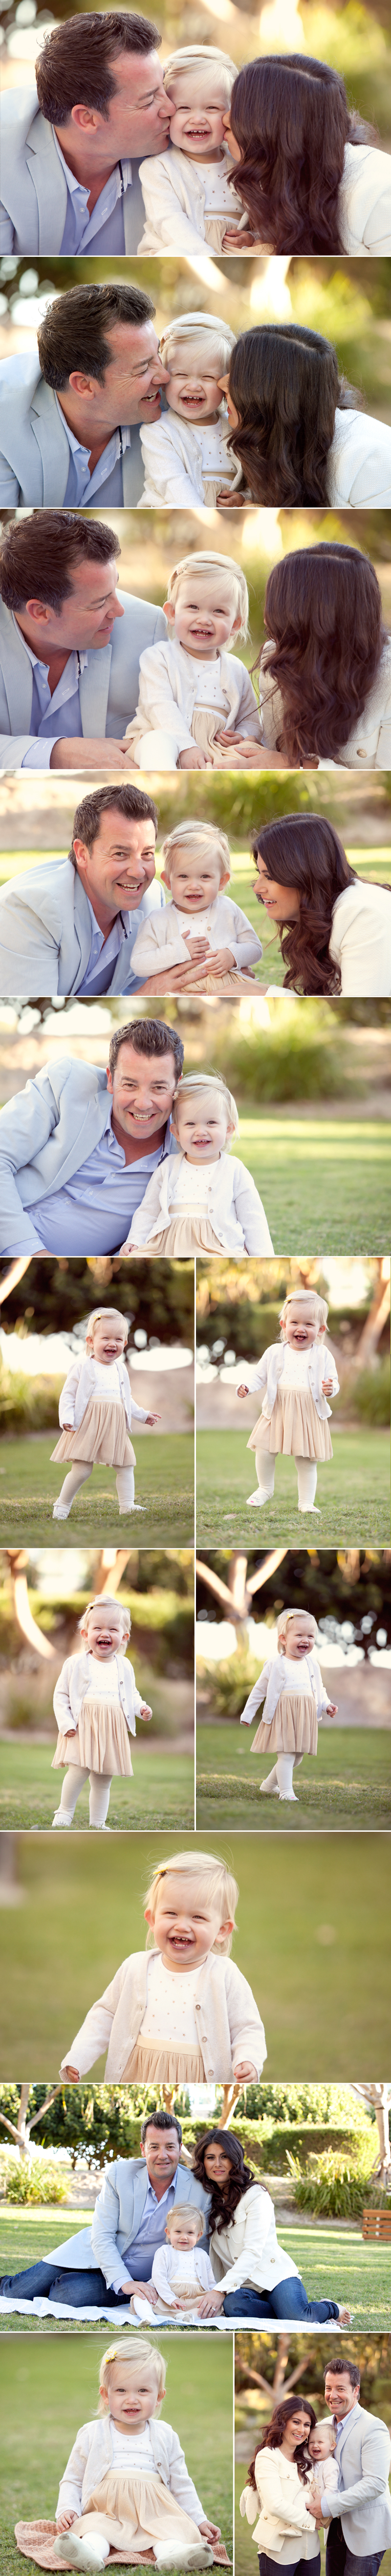 Family photography Gold Coast